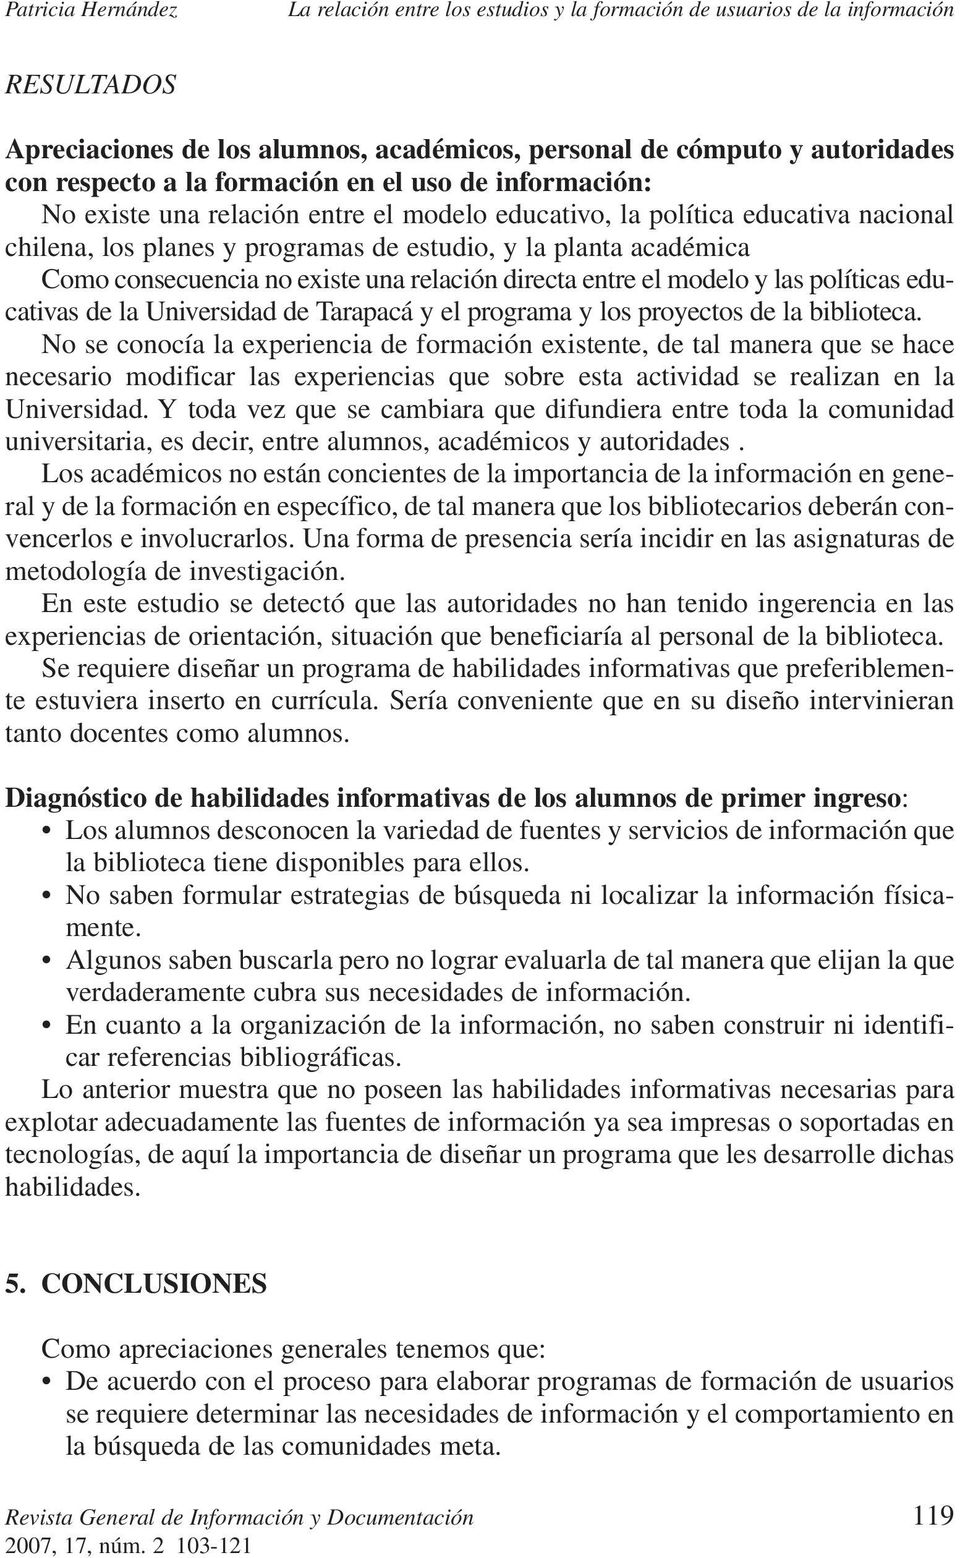 Universidad de Tarapacá y el programa y los proyectos de la biblioteca.